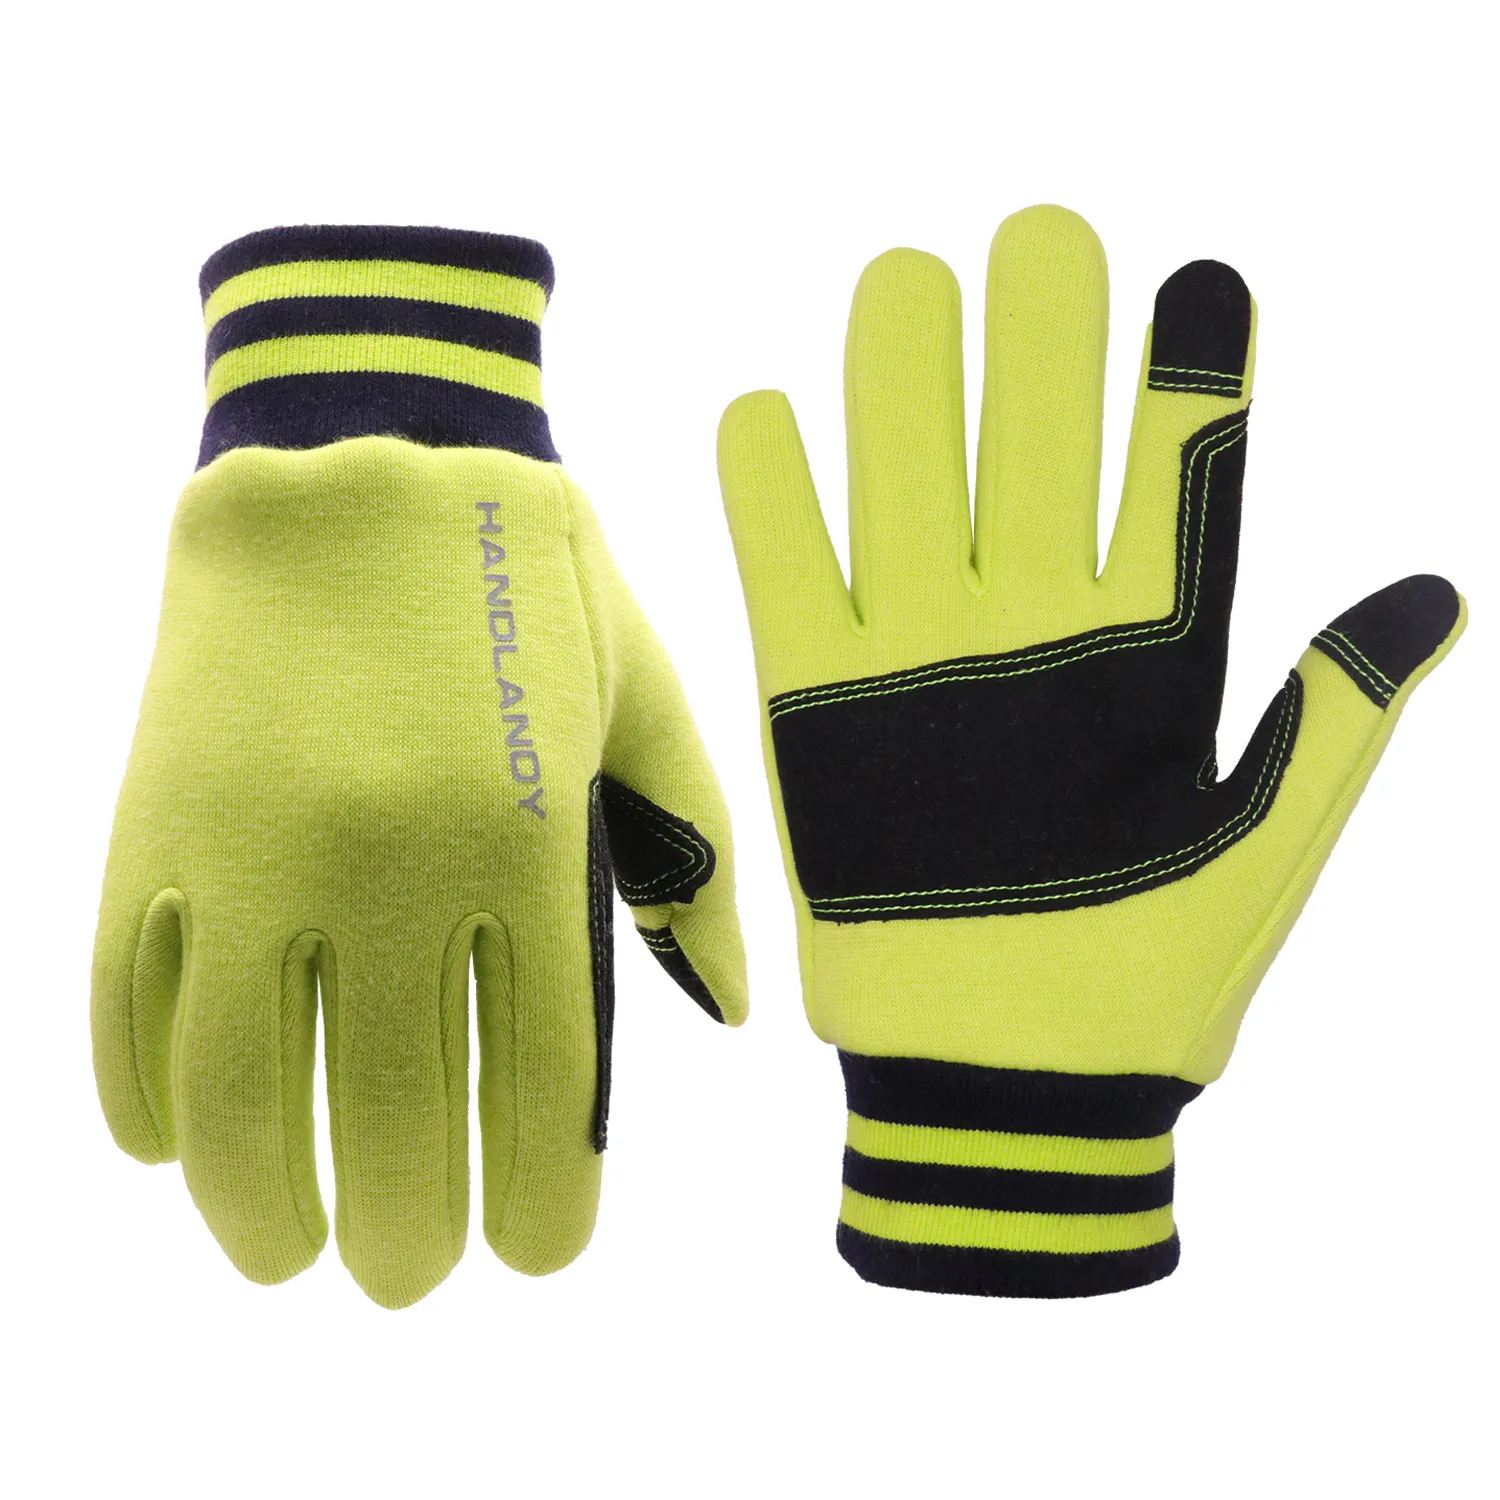 Перчатки для 7 лет. Handlandy перчатки рабочие. Kids Sport Glove open fingers.